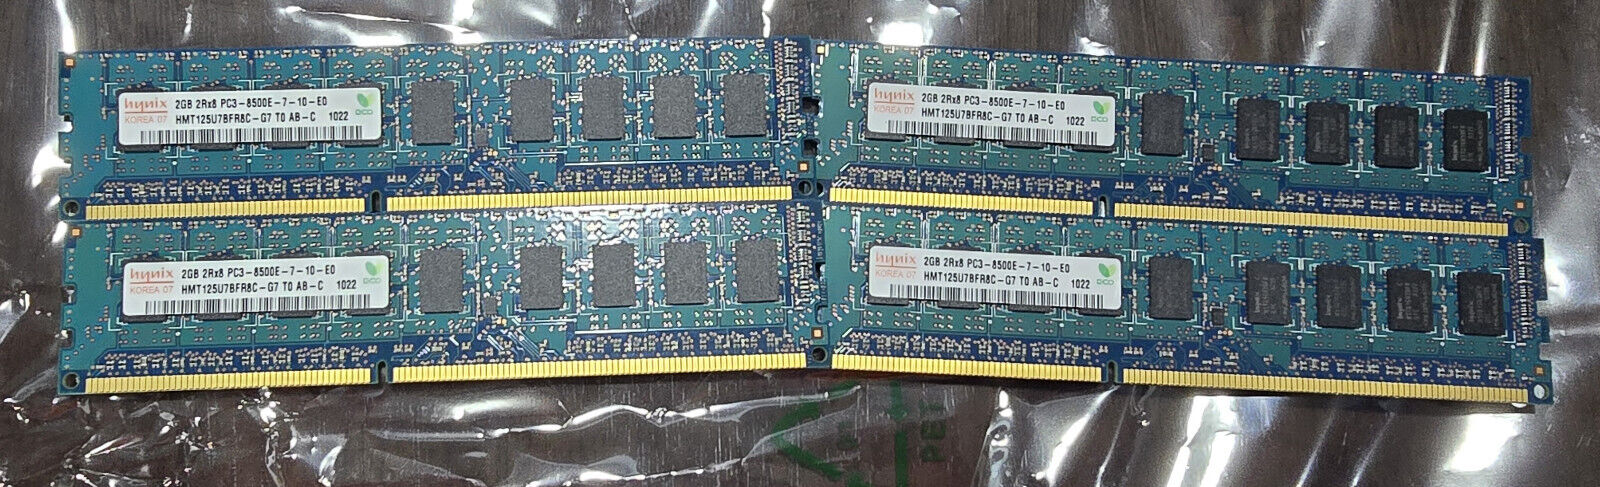 LOT OF 4 HYNIX HMT125U7BFR8C-G7 8GB 4X 2GB 2RX8 PC3-8500E MEMORY  - 8GB